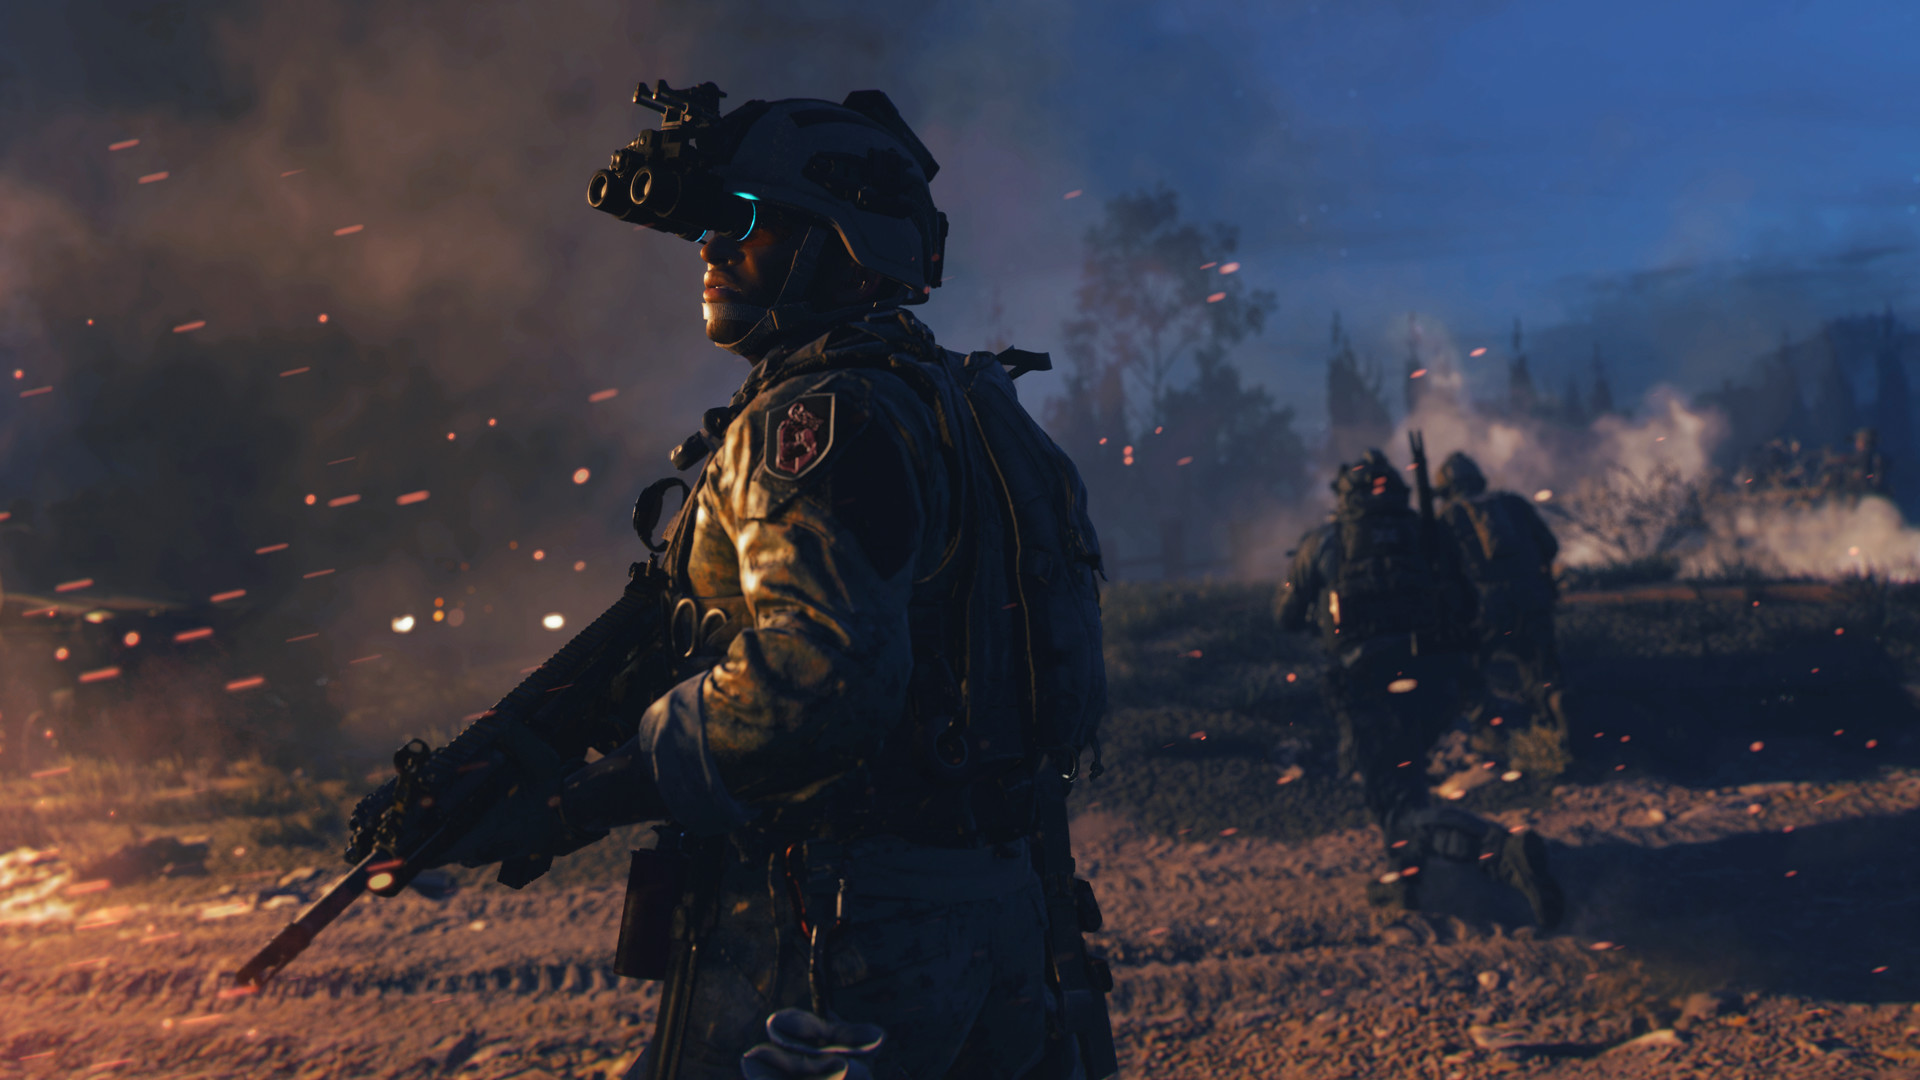 احتمال حضور مسی و نیمار در بخش چندنفره بازی Call of Duty: Modern Warfare 2 